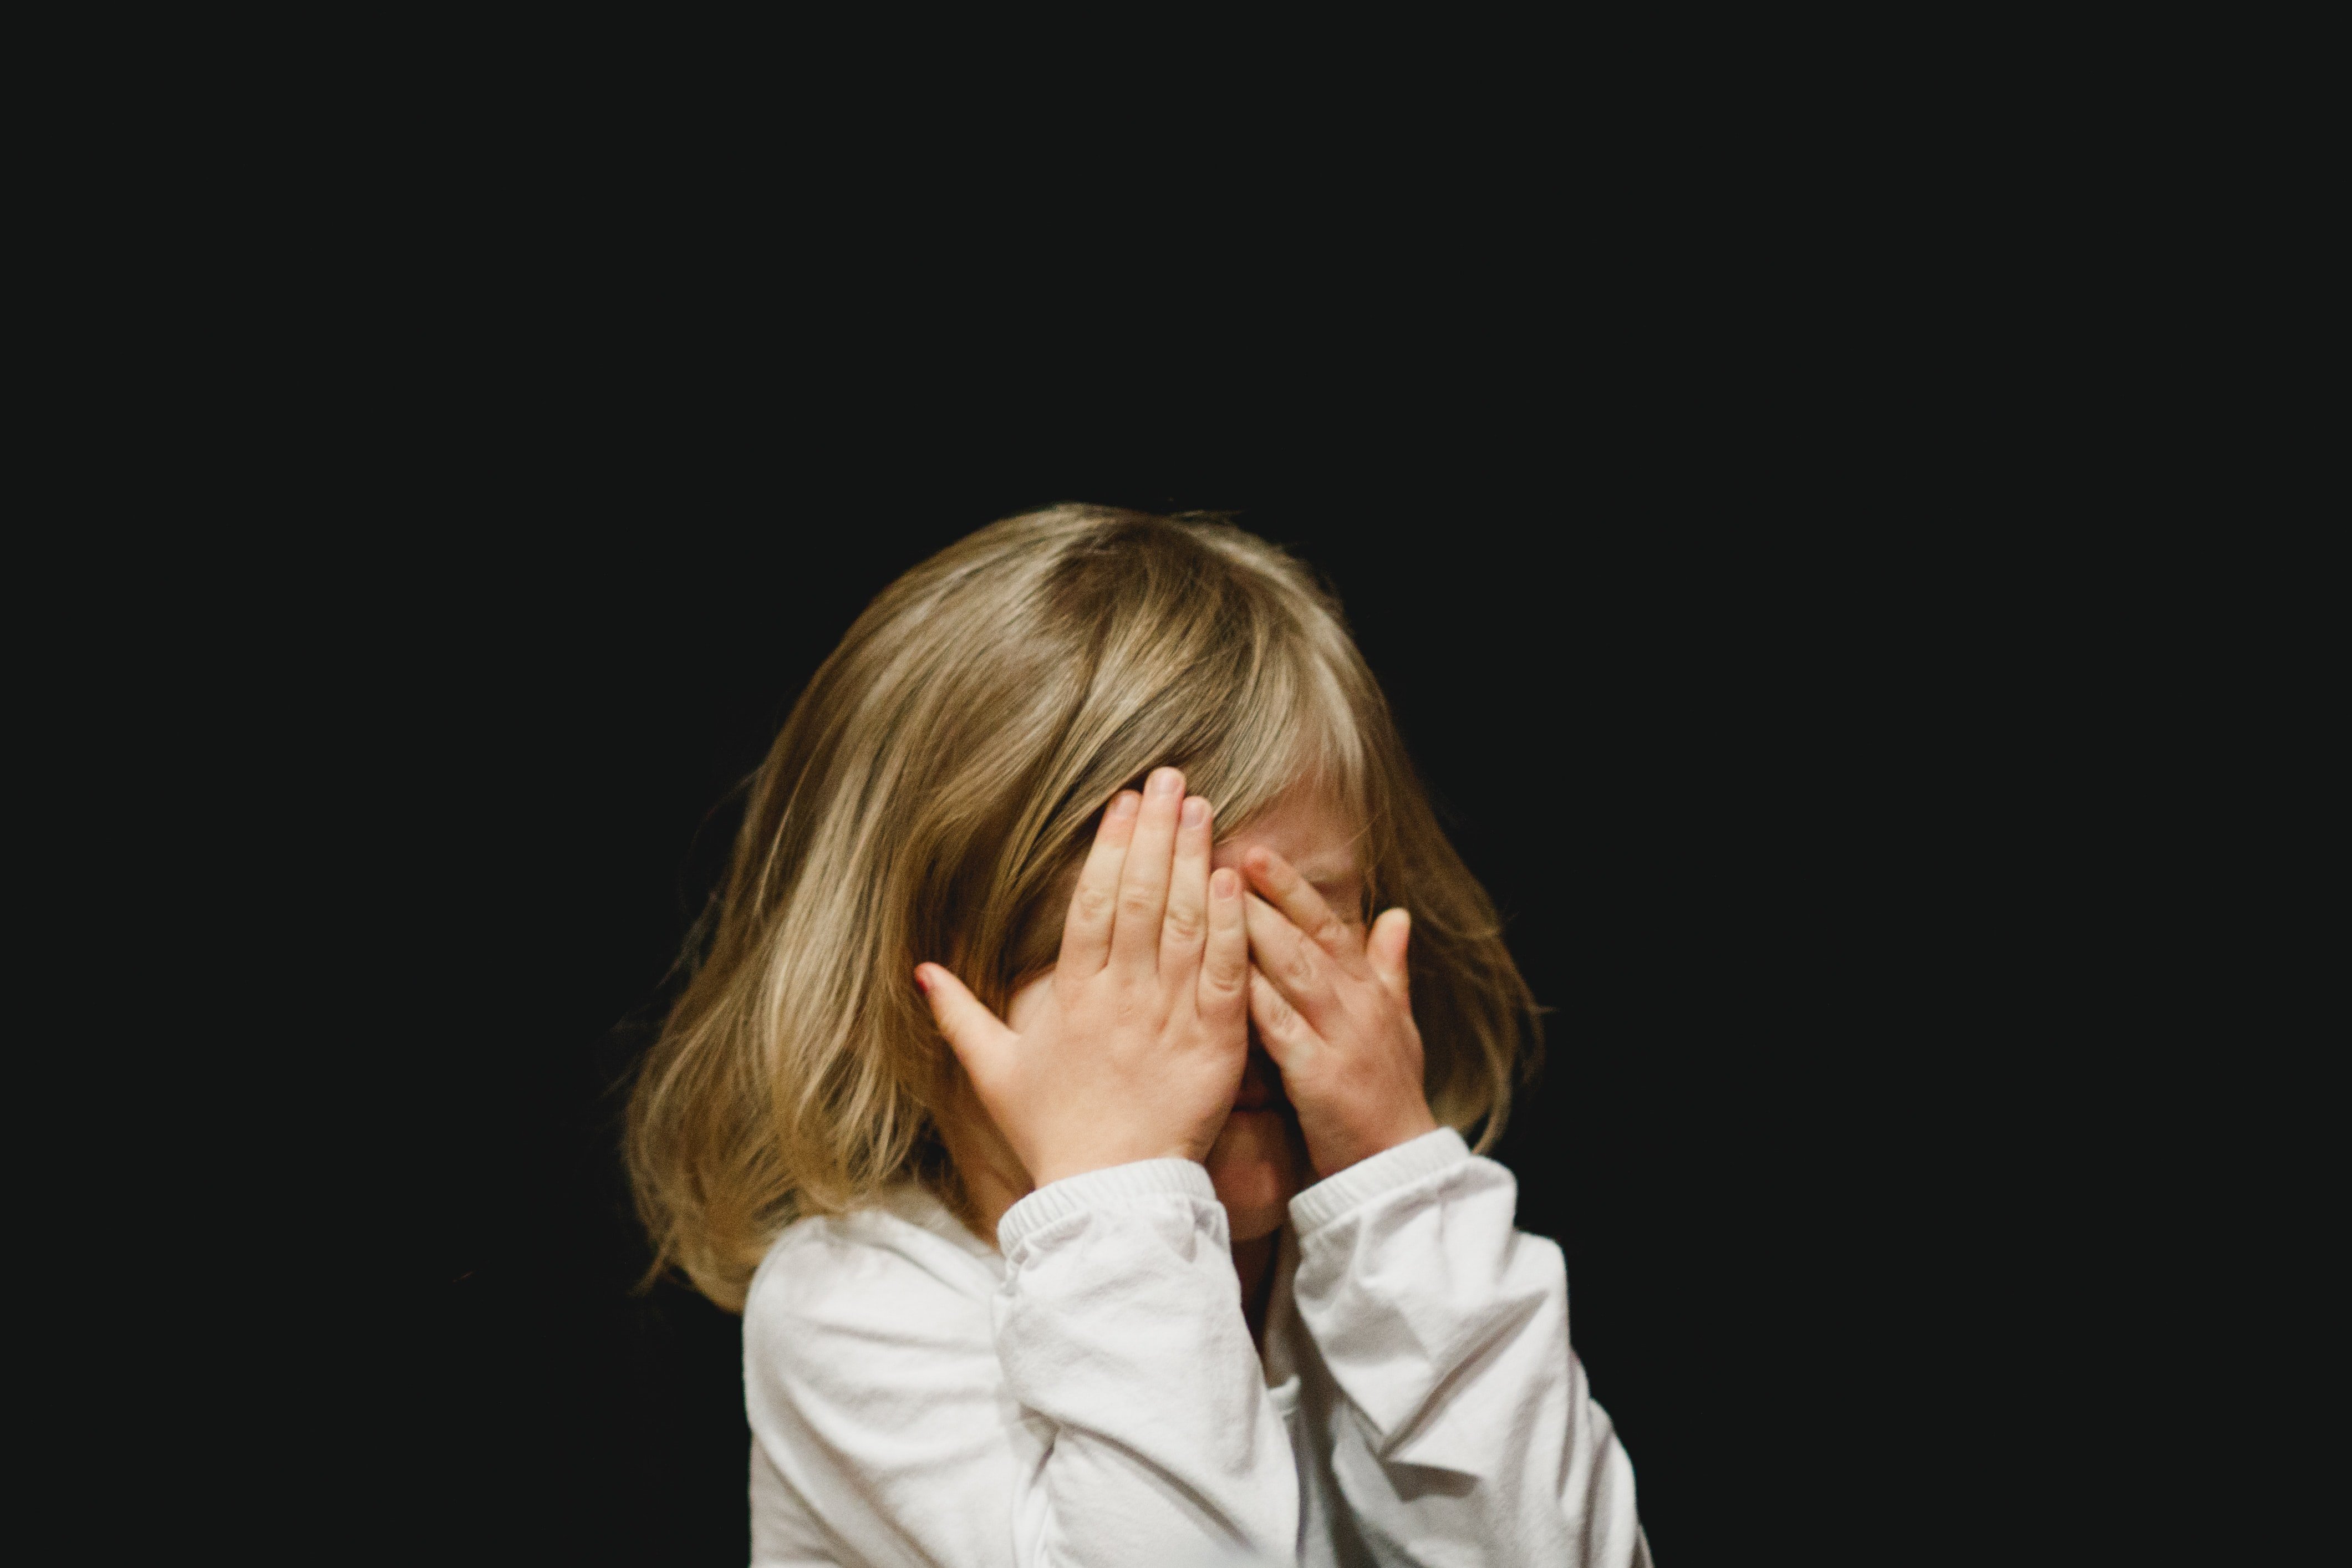 Das Mädchen konnte ihre Tränen nicht kontrollieren, nachdem ihre Lehrerin sie immer wieder verspottet hatte. | Quelle: Unsplash